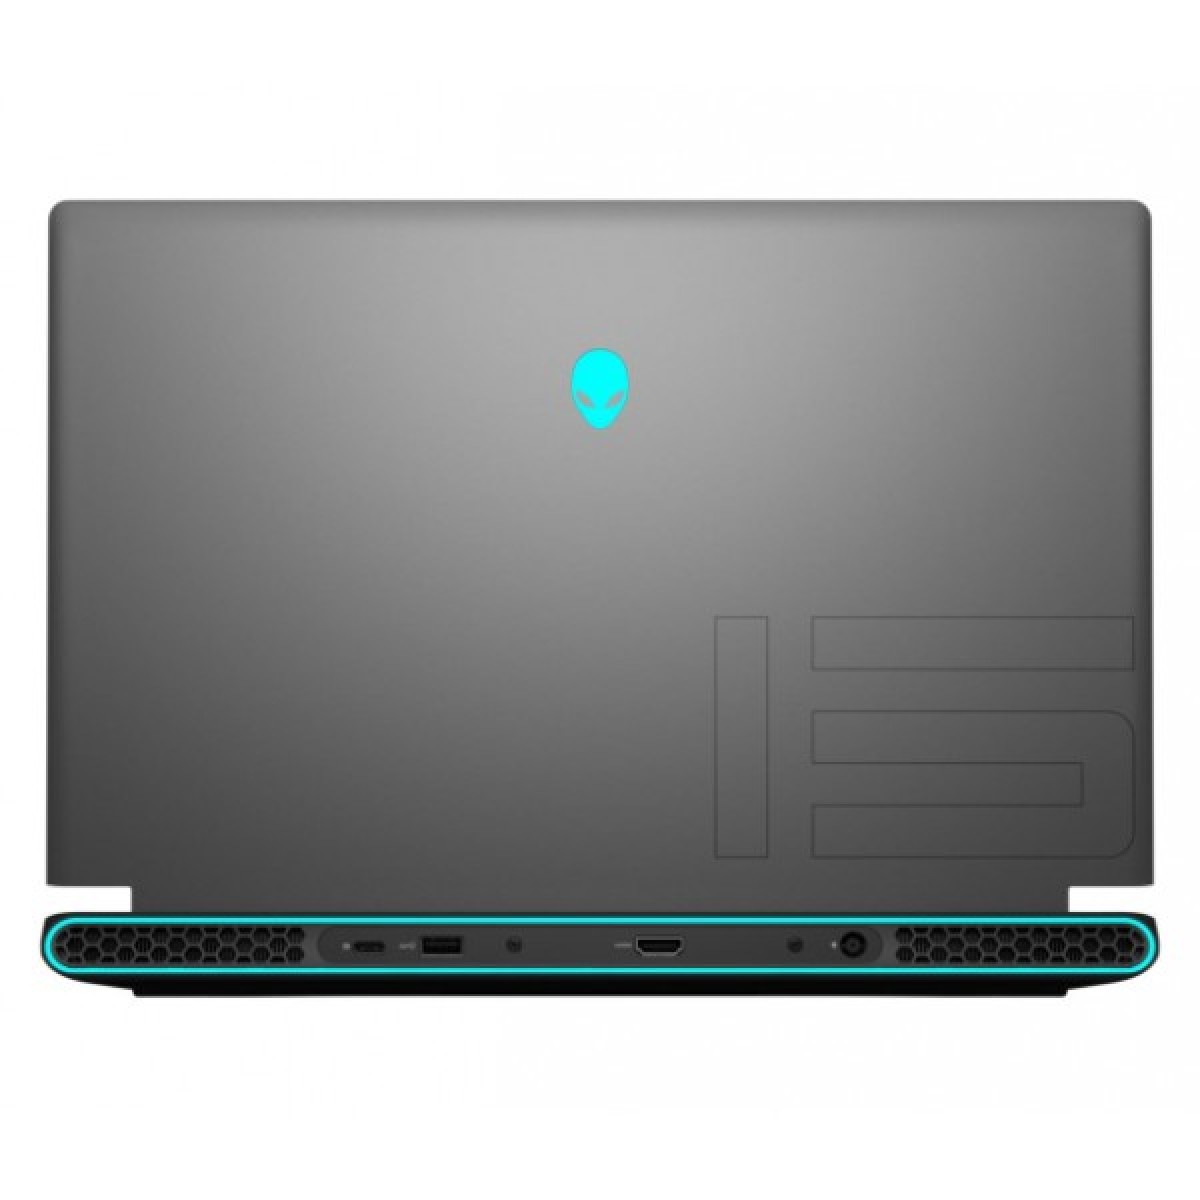 Купить Ноутбук Alienware m15 (Alienware0142V2-Dark) - ITMag